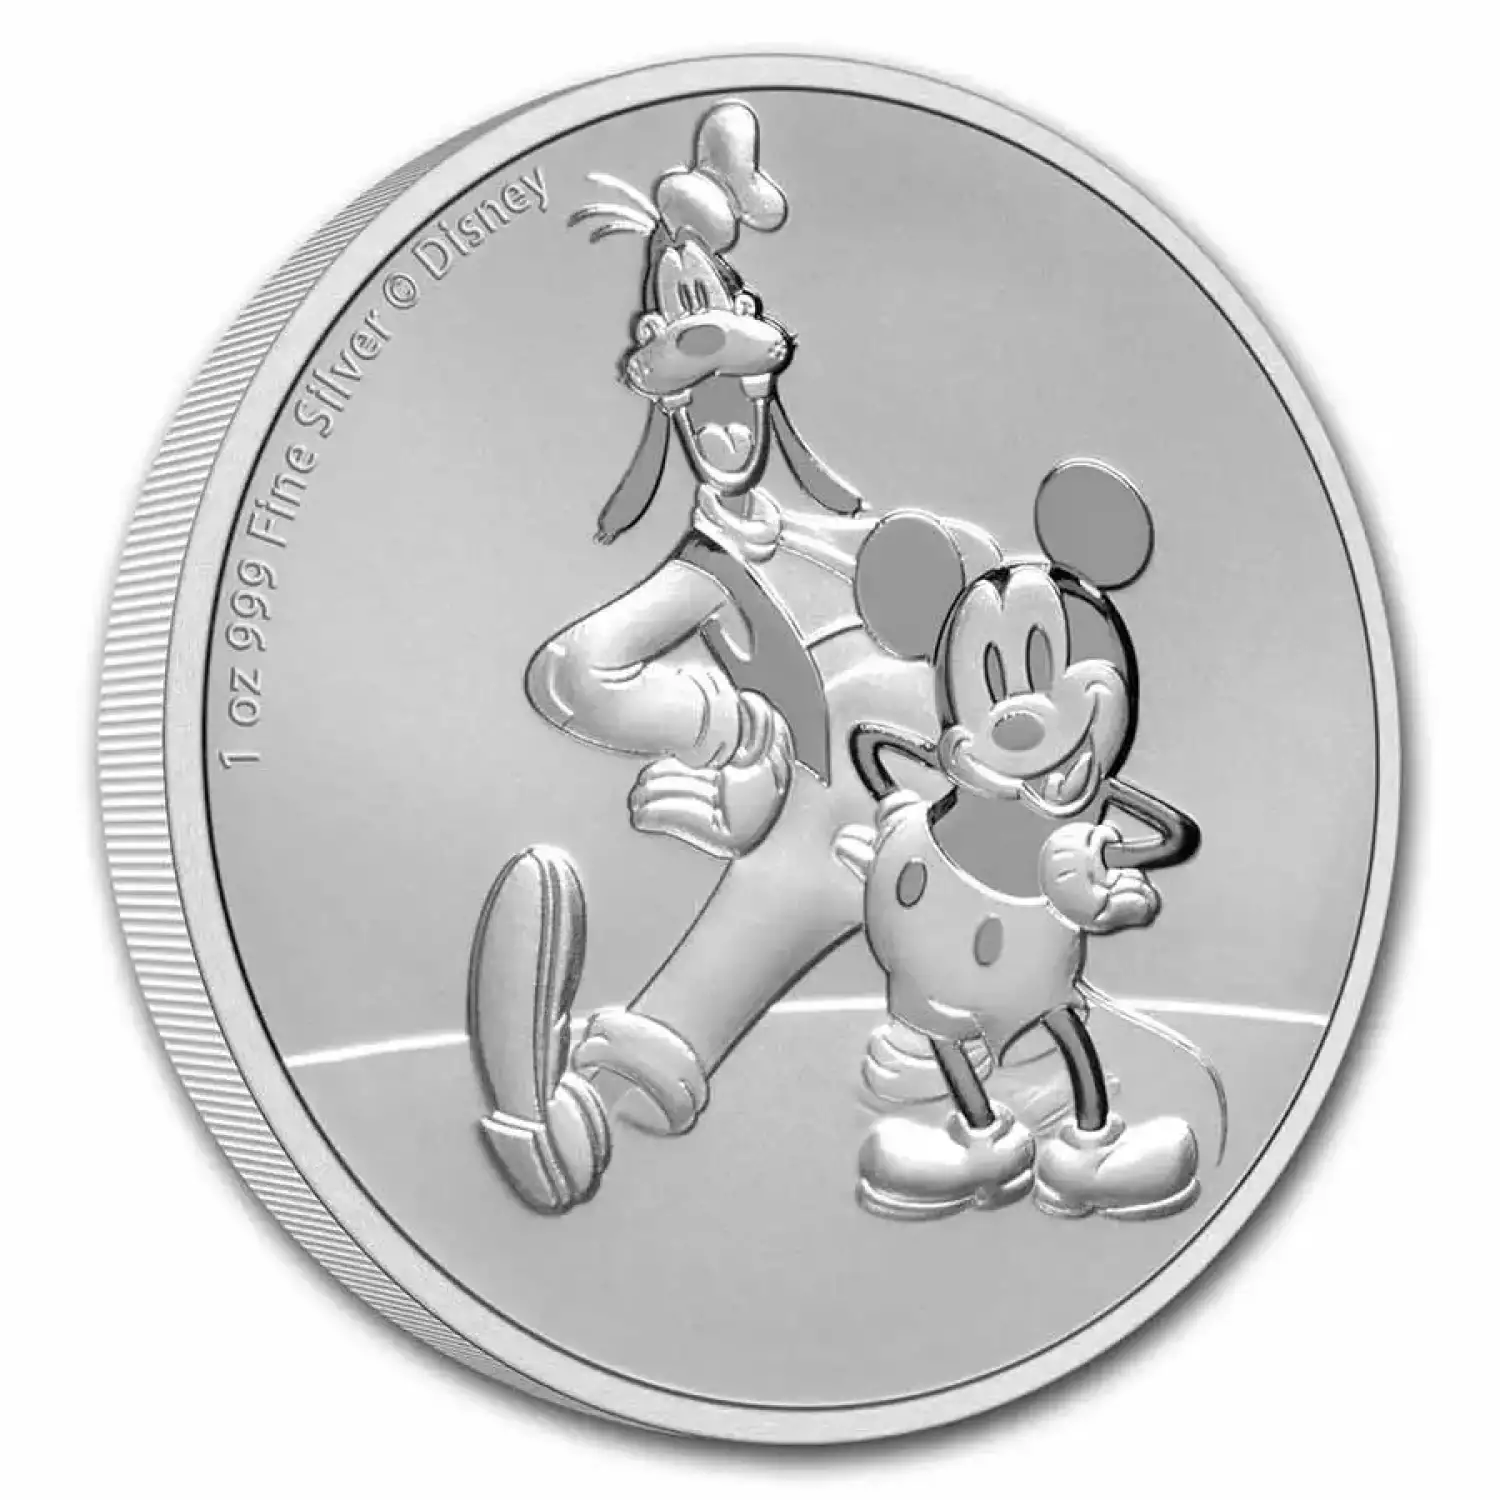 2021 Niue 1 oz Silver $2 Disney Mickey & Goofy BU (3)